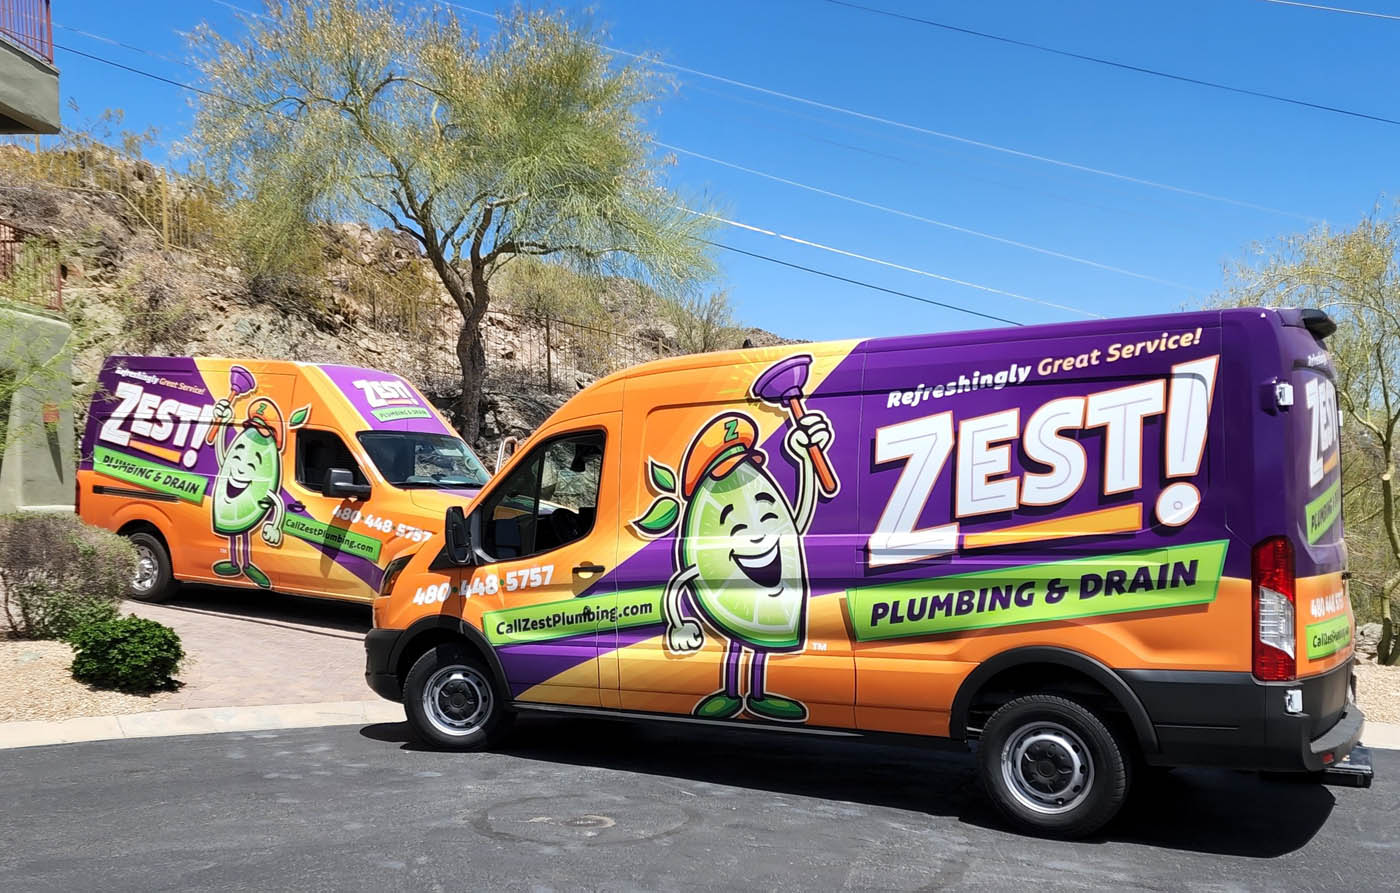 Local Zest Plumbing & Drain plumbing trucks in Glendale / Peoria, AZ.